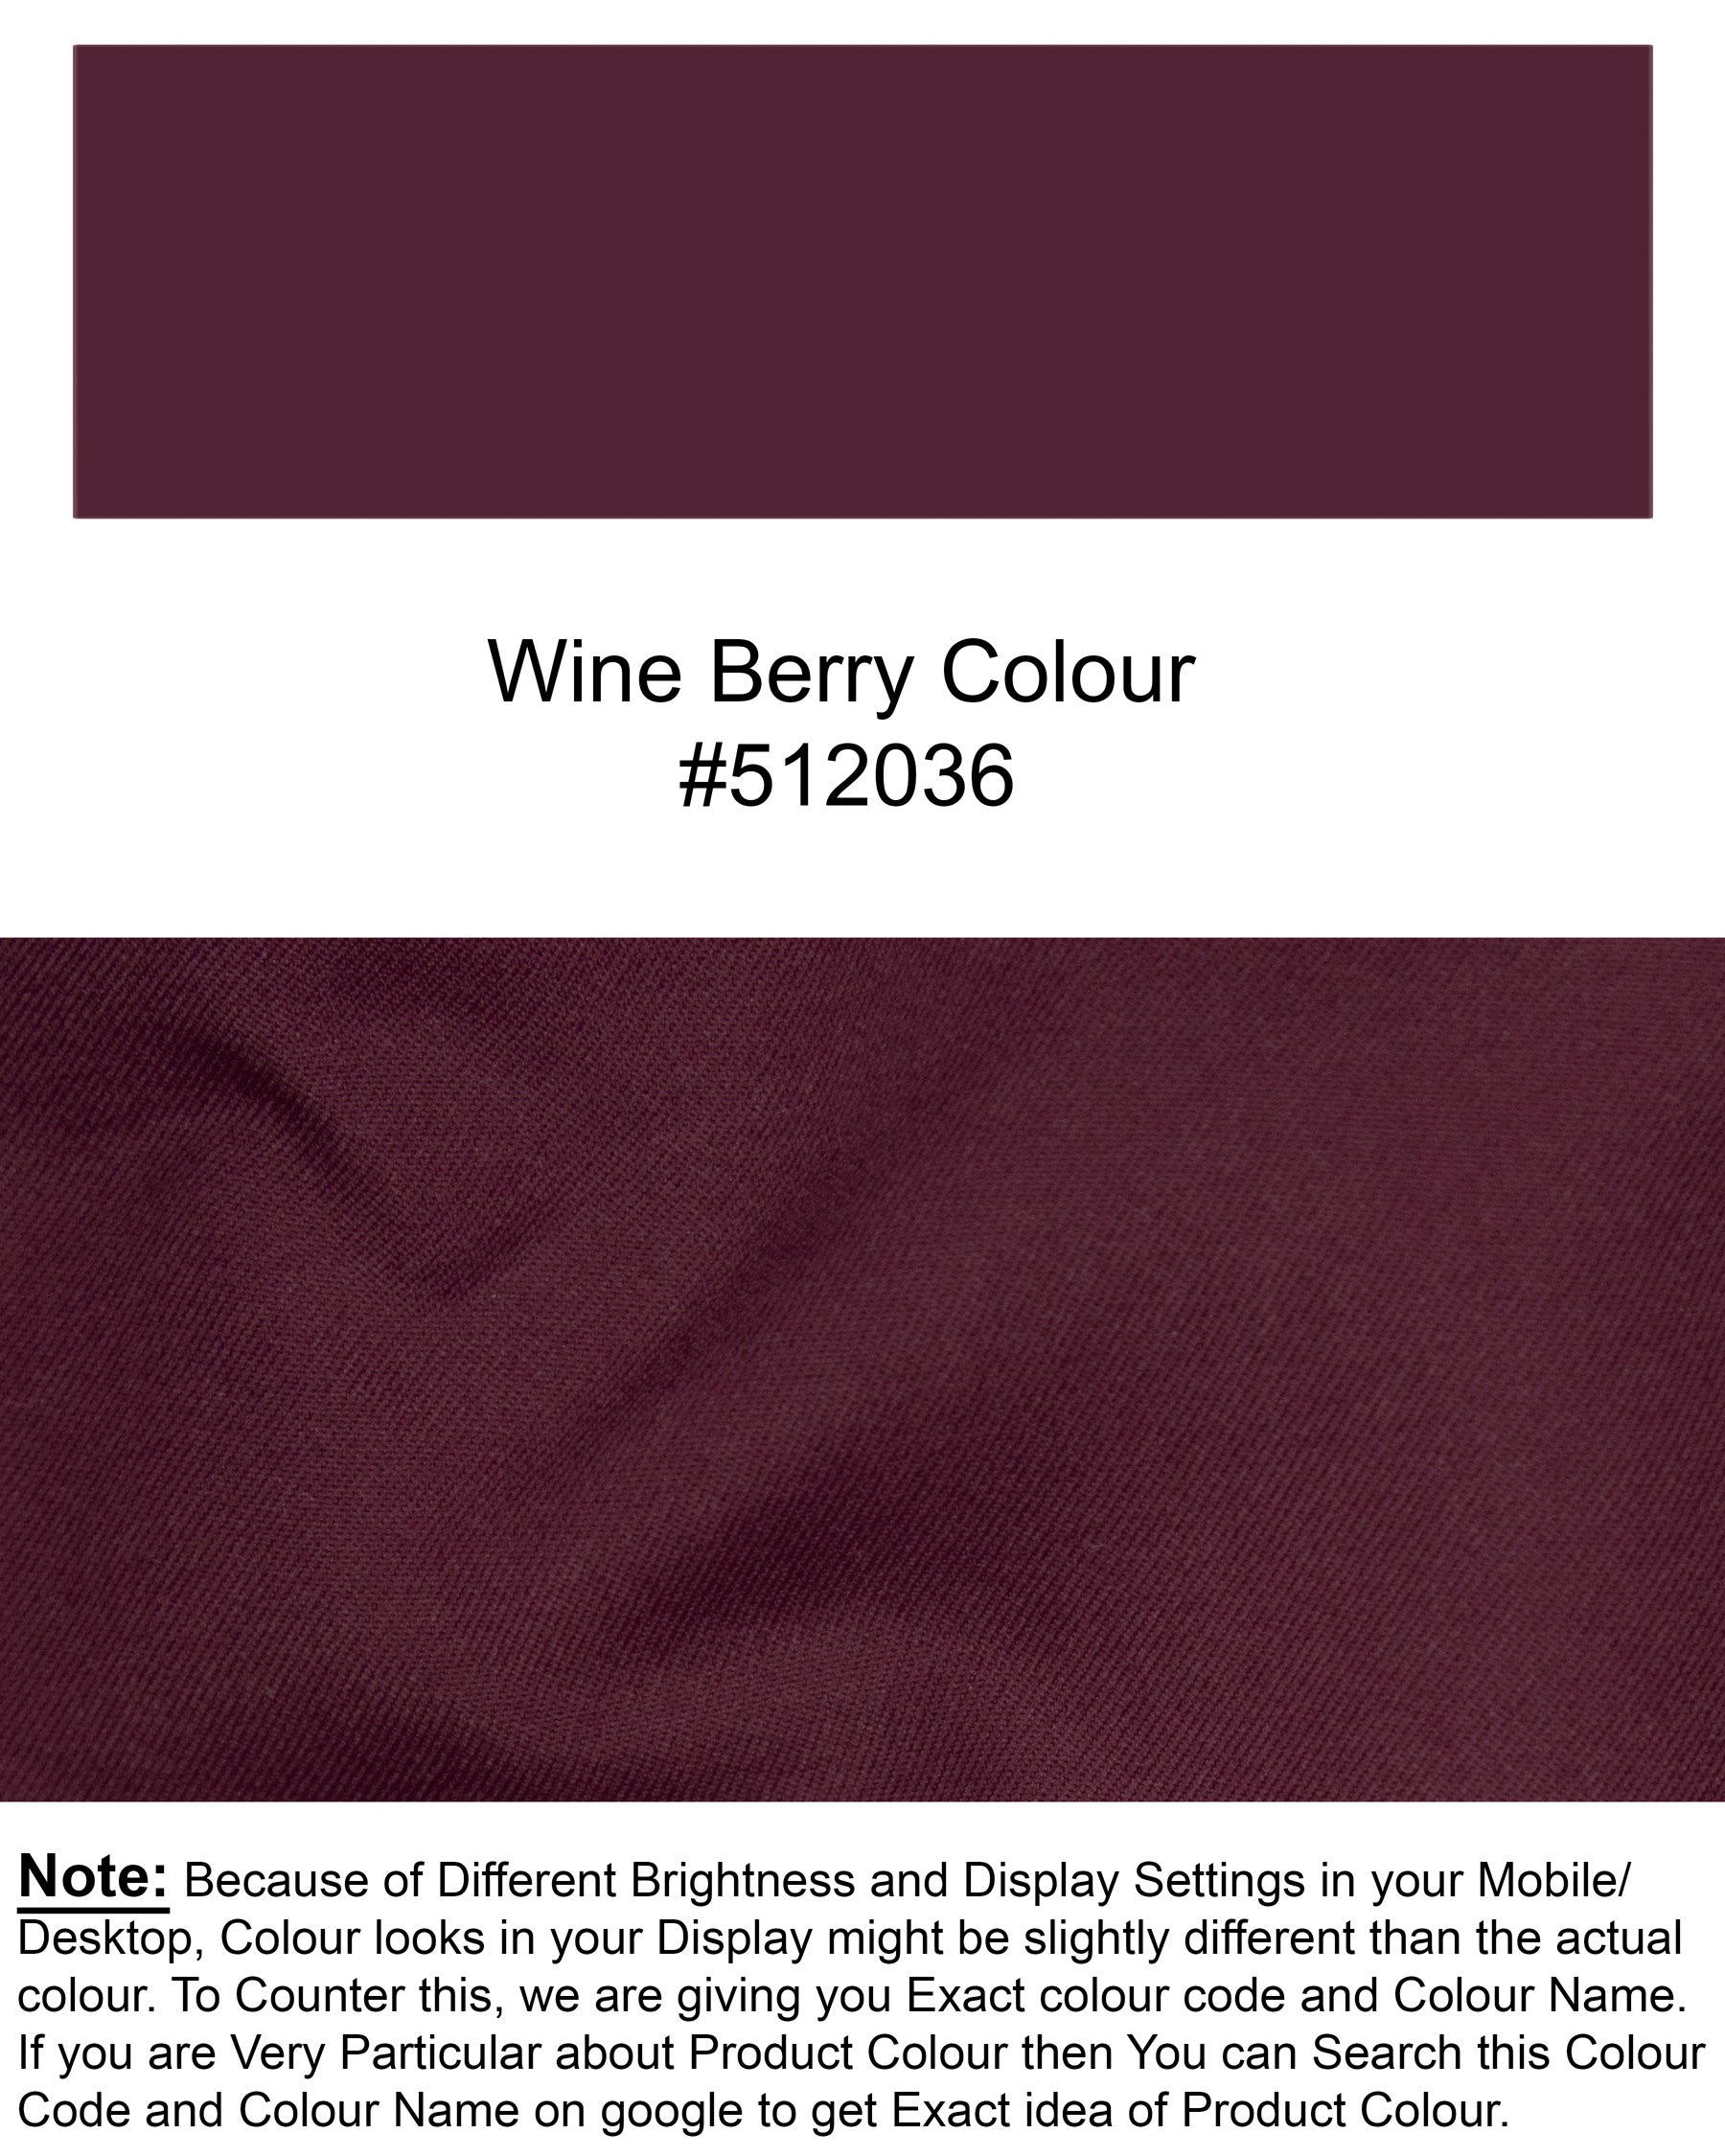 Wine Berry Woolrich Waistcoat V1271-36, V1271-38, V1271-40, V1271-42, V1271-44, V1271-46, V1271-48, V1271-50, V1271-52, V1271-54, V1271-56, V1271-58, V1271-60